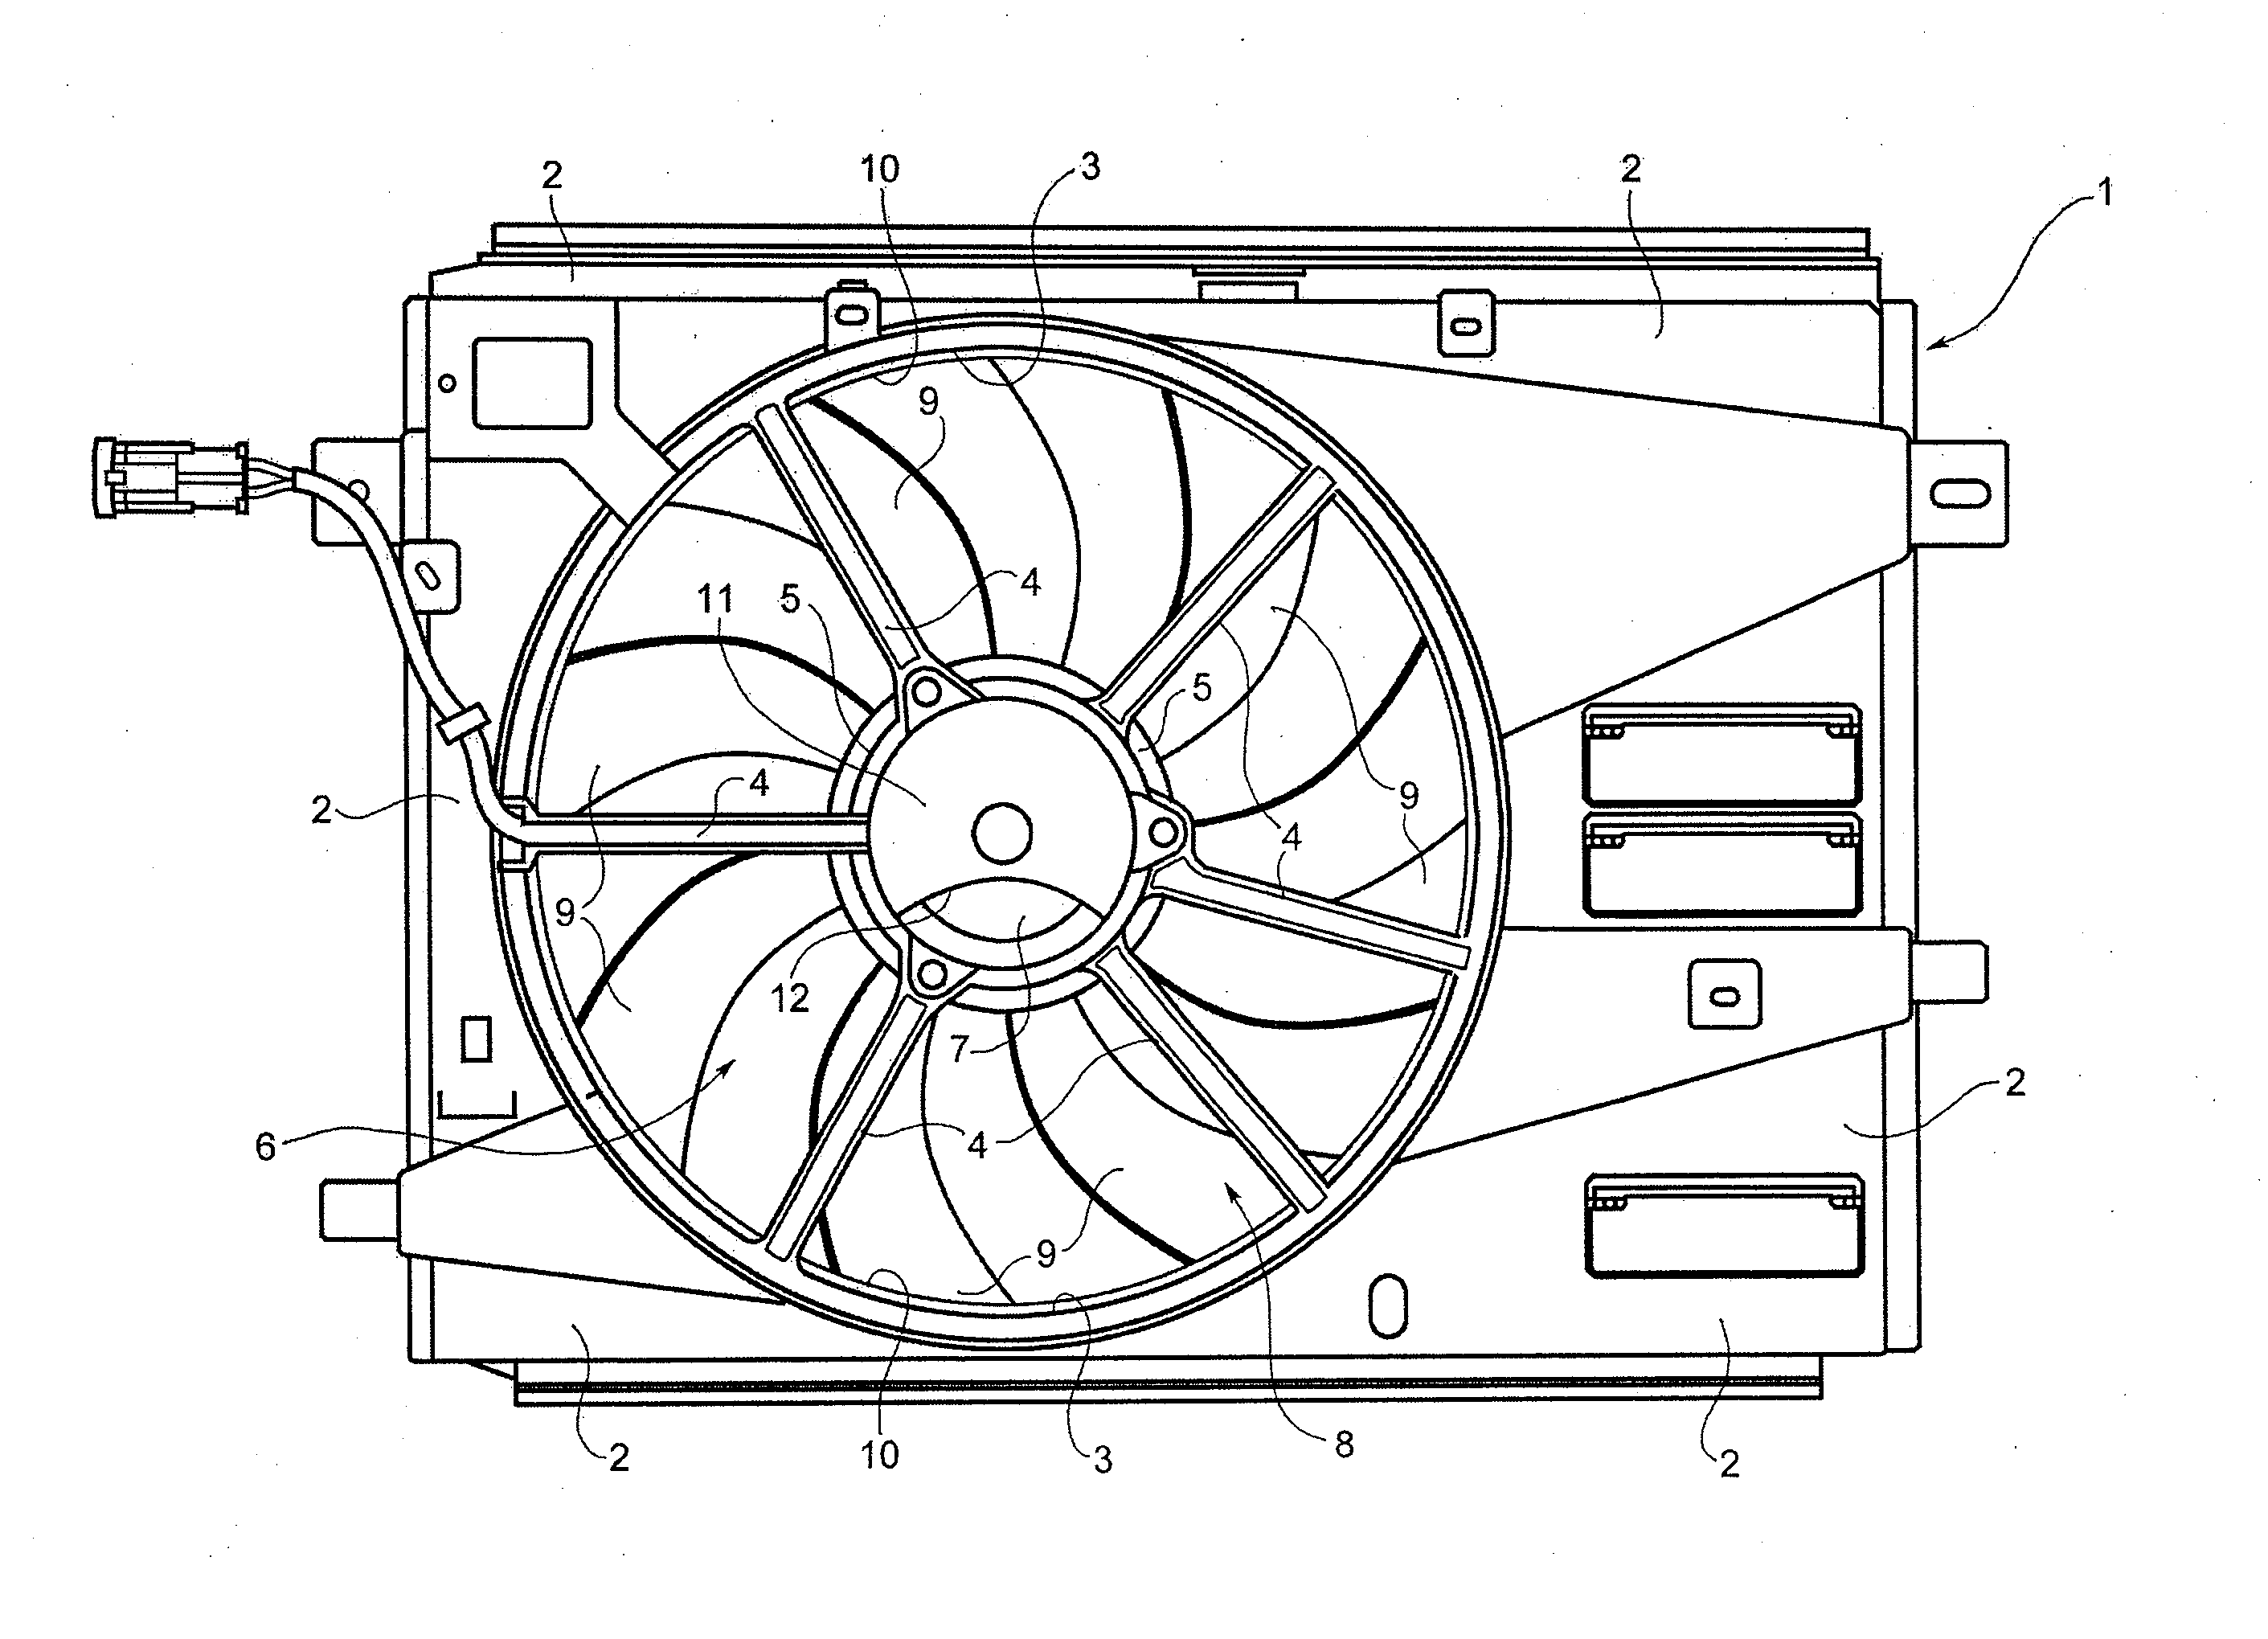 Fan unit for a heat exchanger